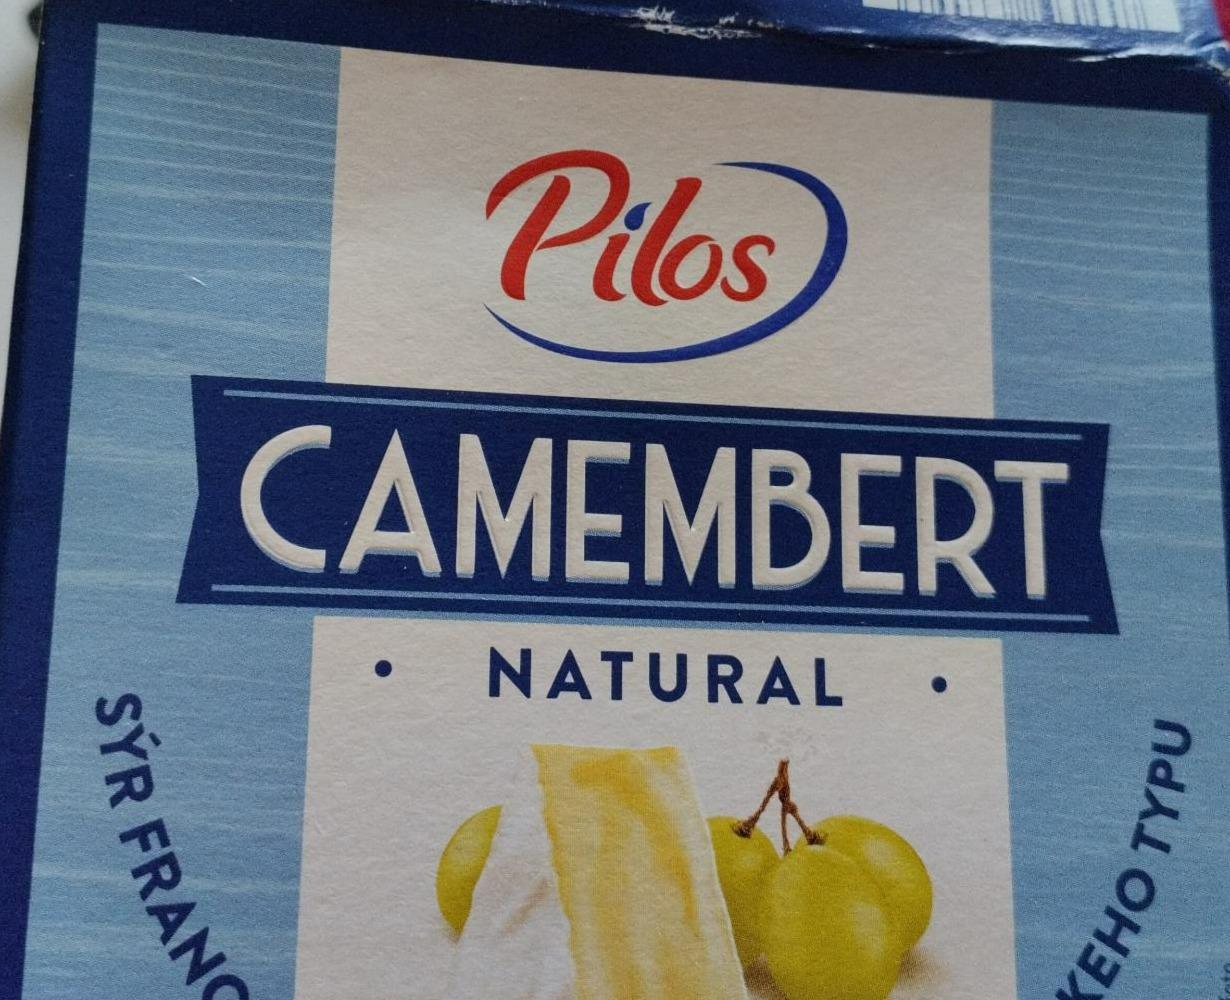 Fotografie - Camembert Natural Pilos